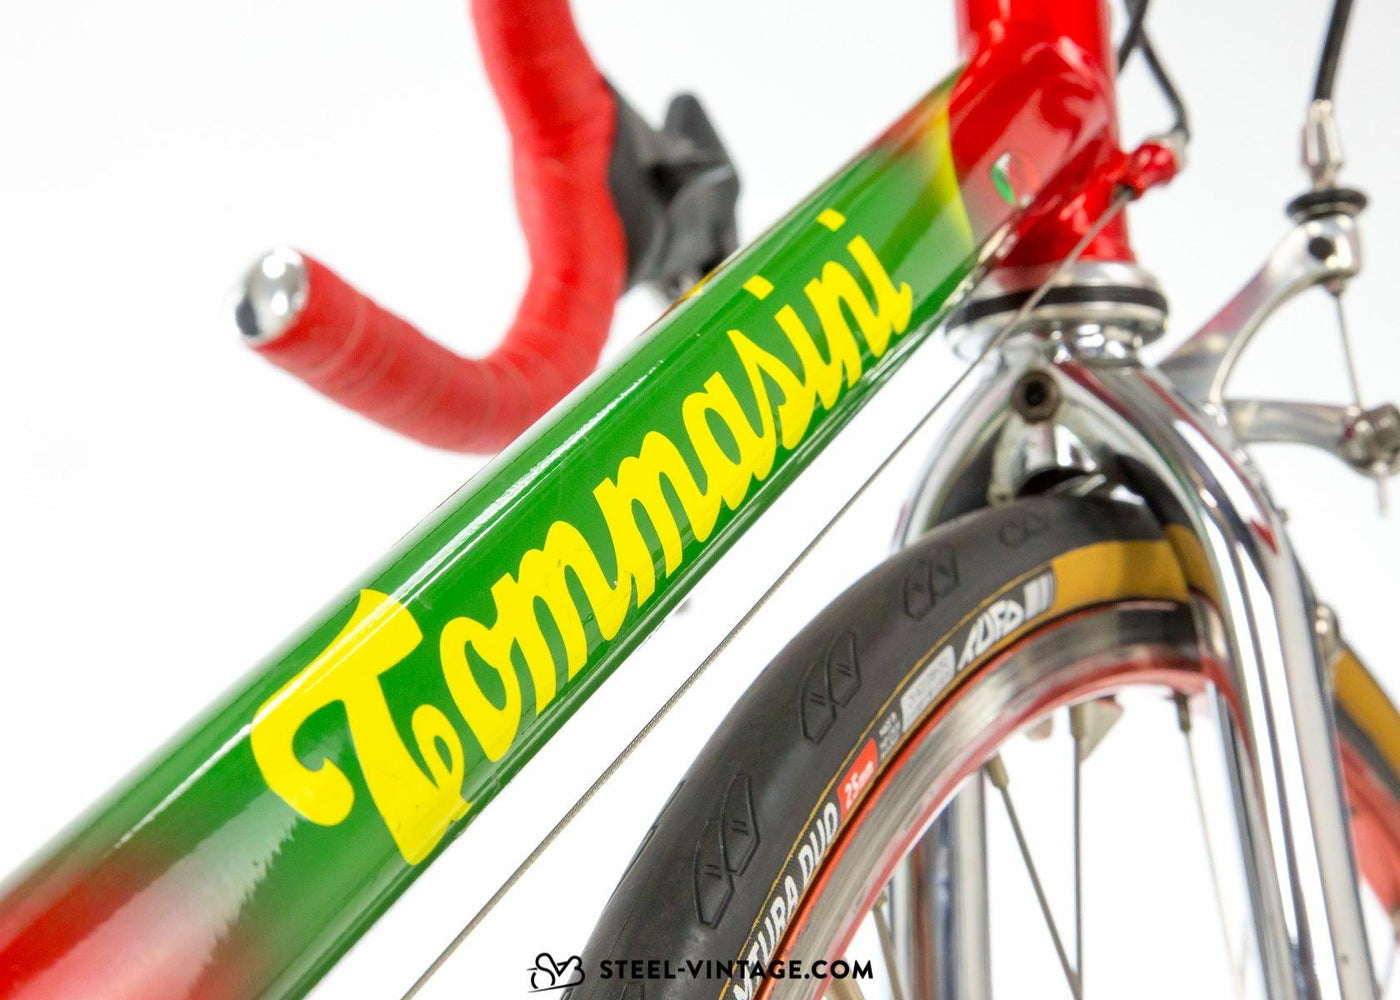 Tommasini Tecno Extra Team Grassi Mapei Team Bike 1996 - Steel Vintage Bikes